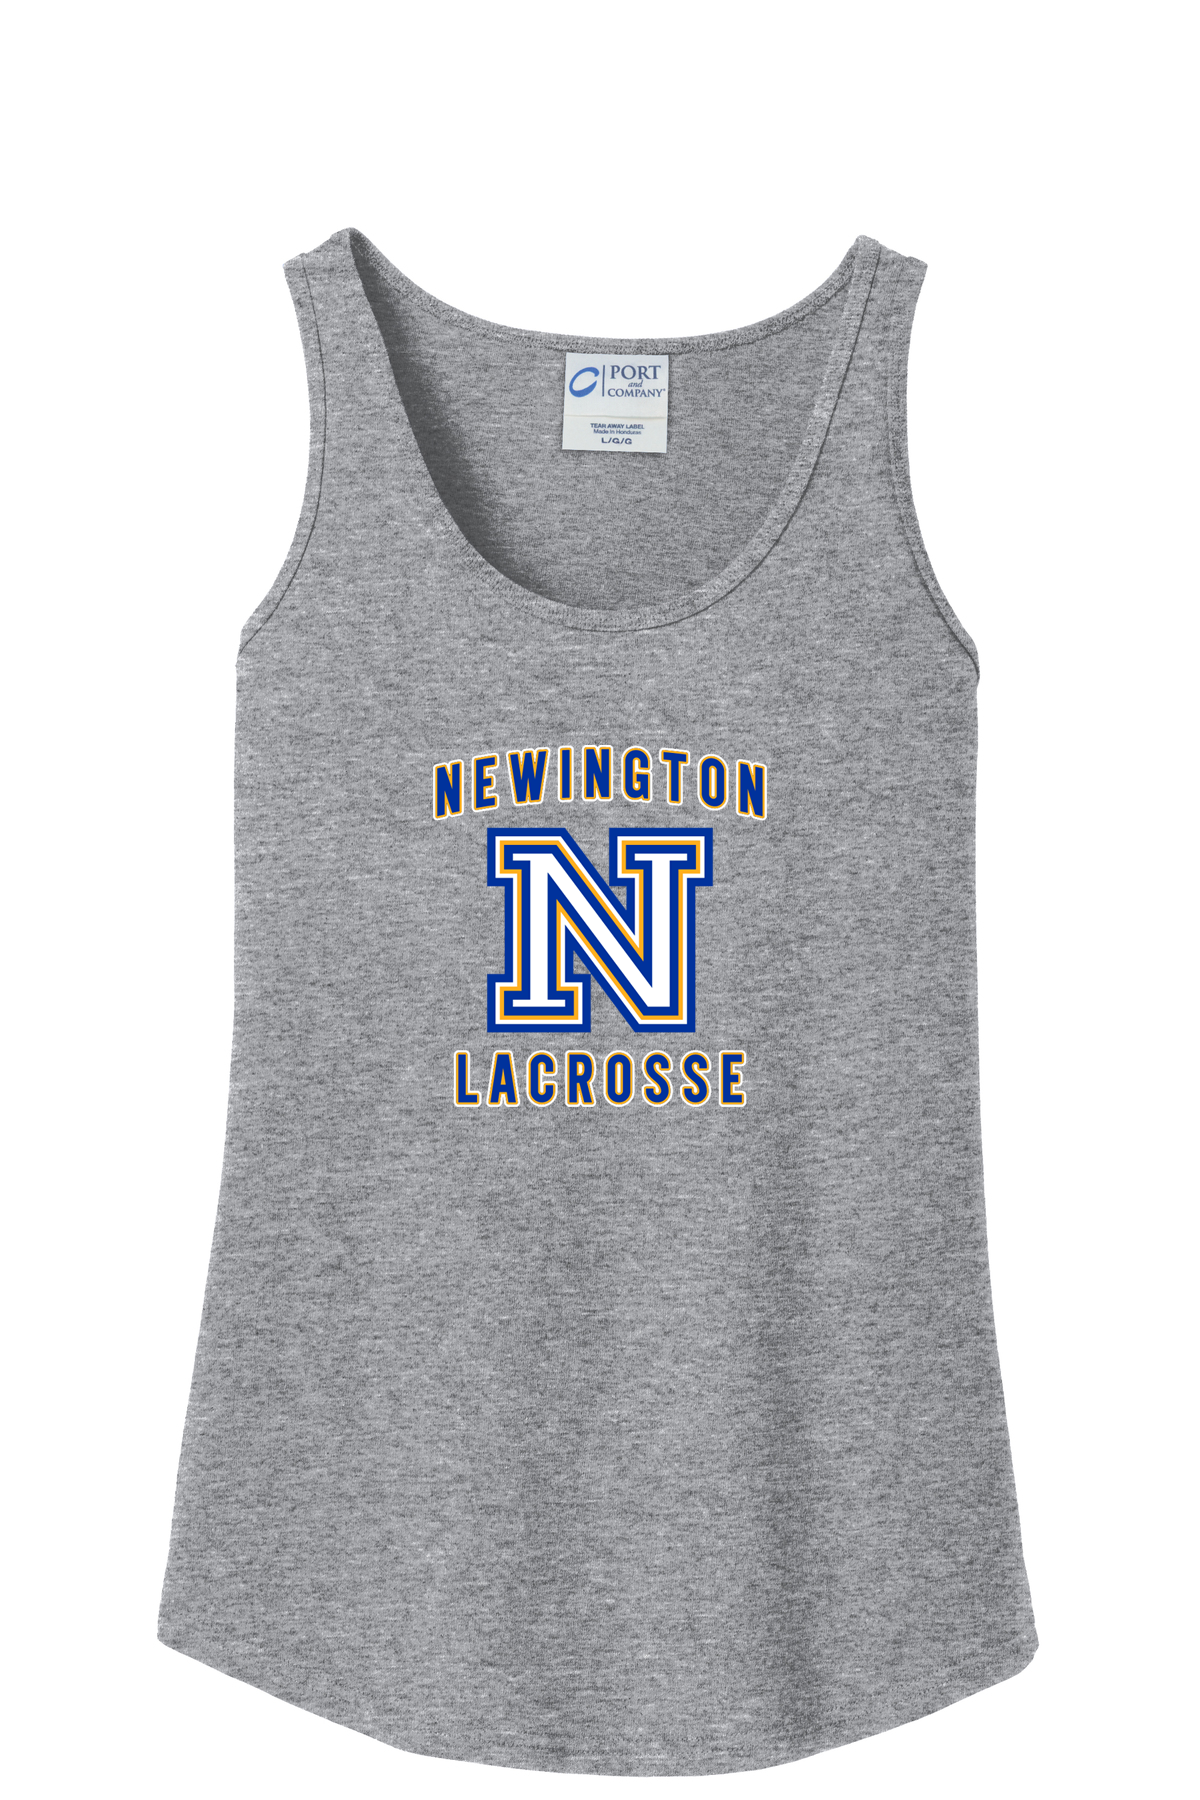 Newington Lacrosse Grey Women's Tank Top